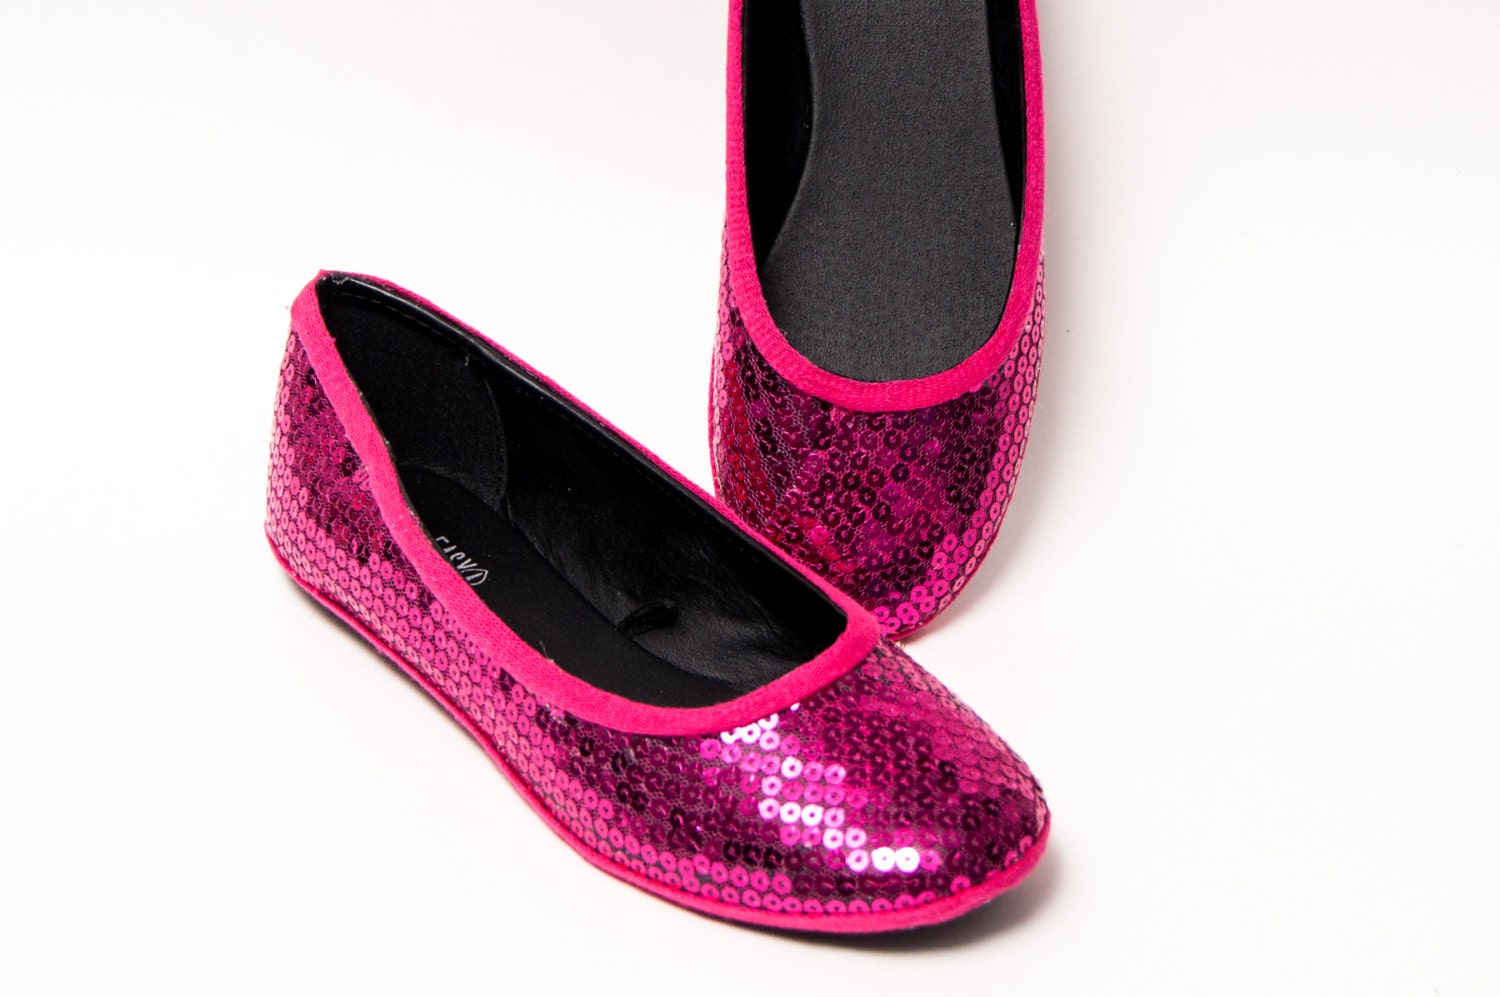 Sequin Fuchsia Hot Pink Slipper Ballet Flats Dress Shoes